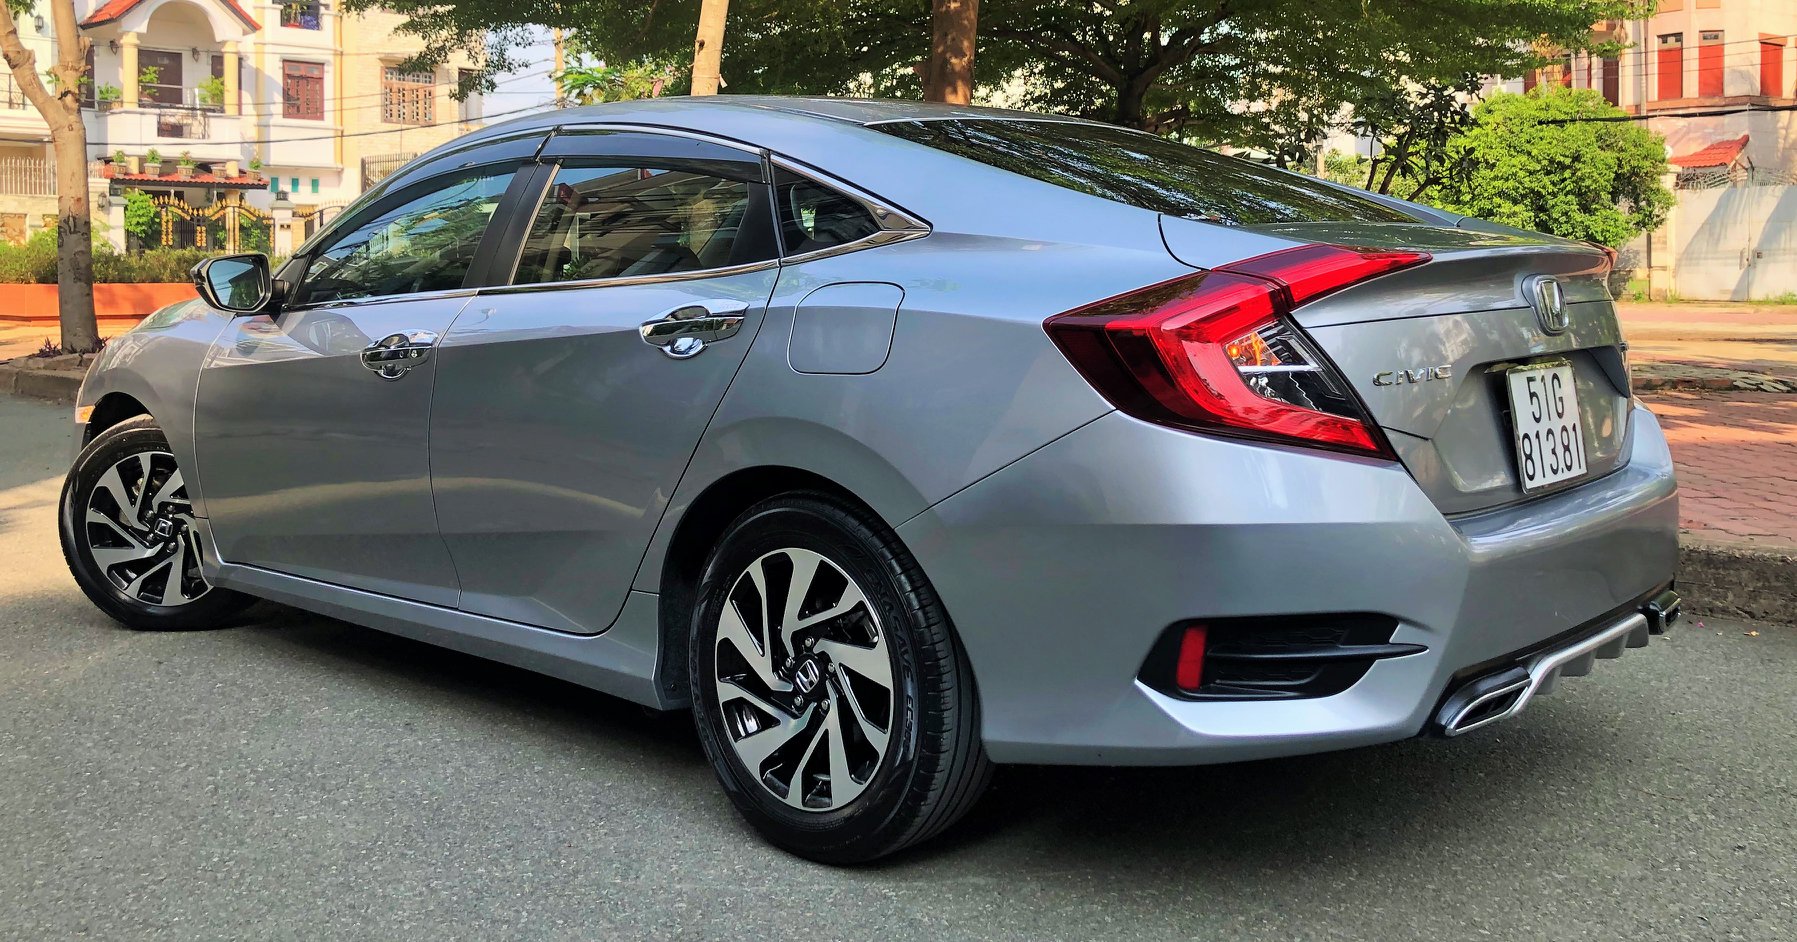 Honda Civic 2018 công bố giá bán